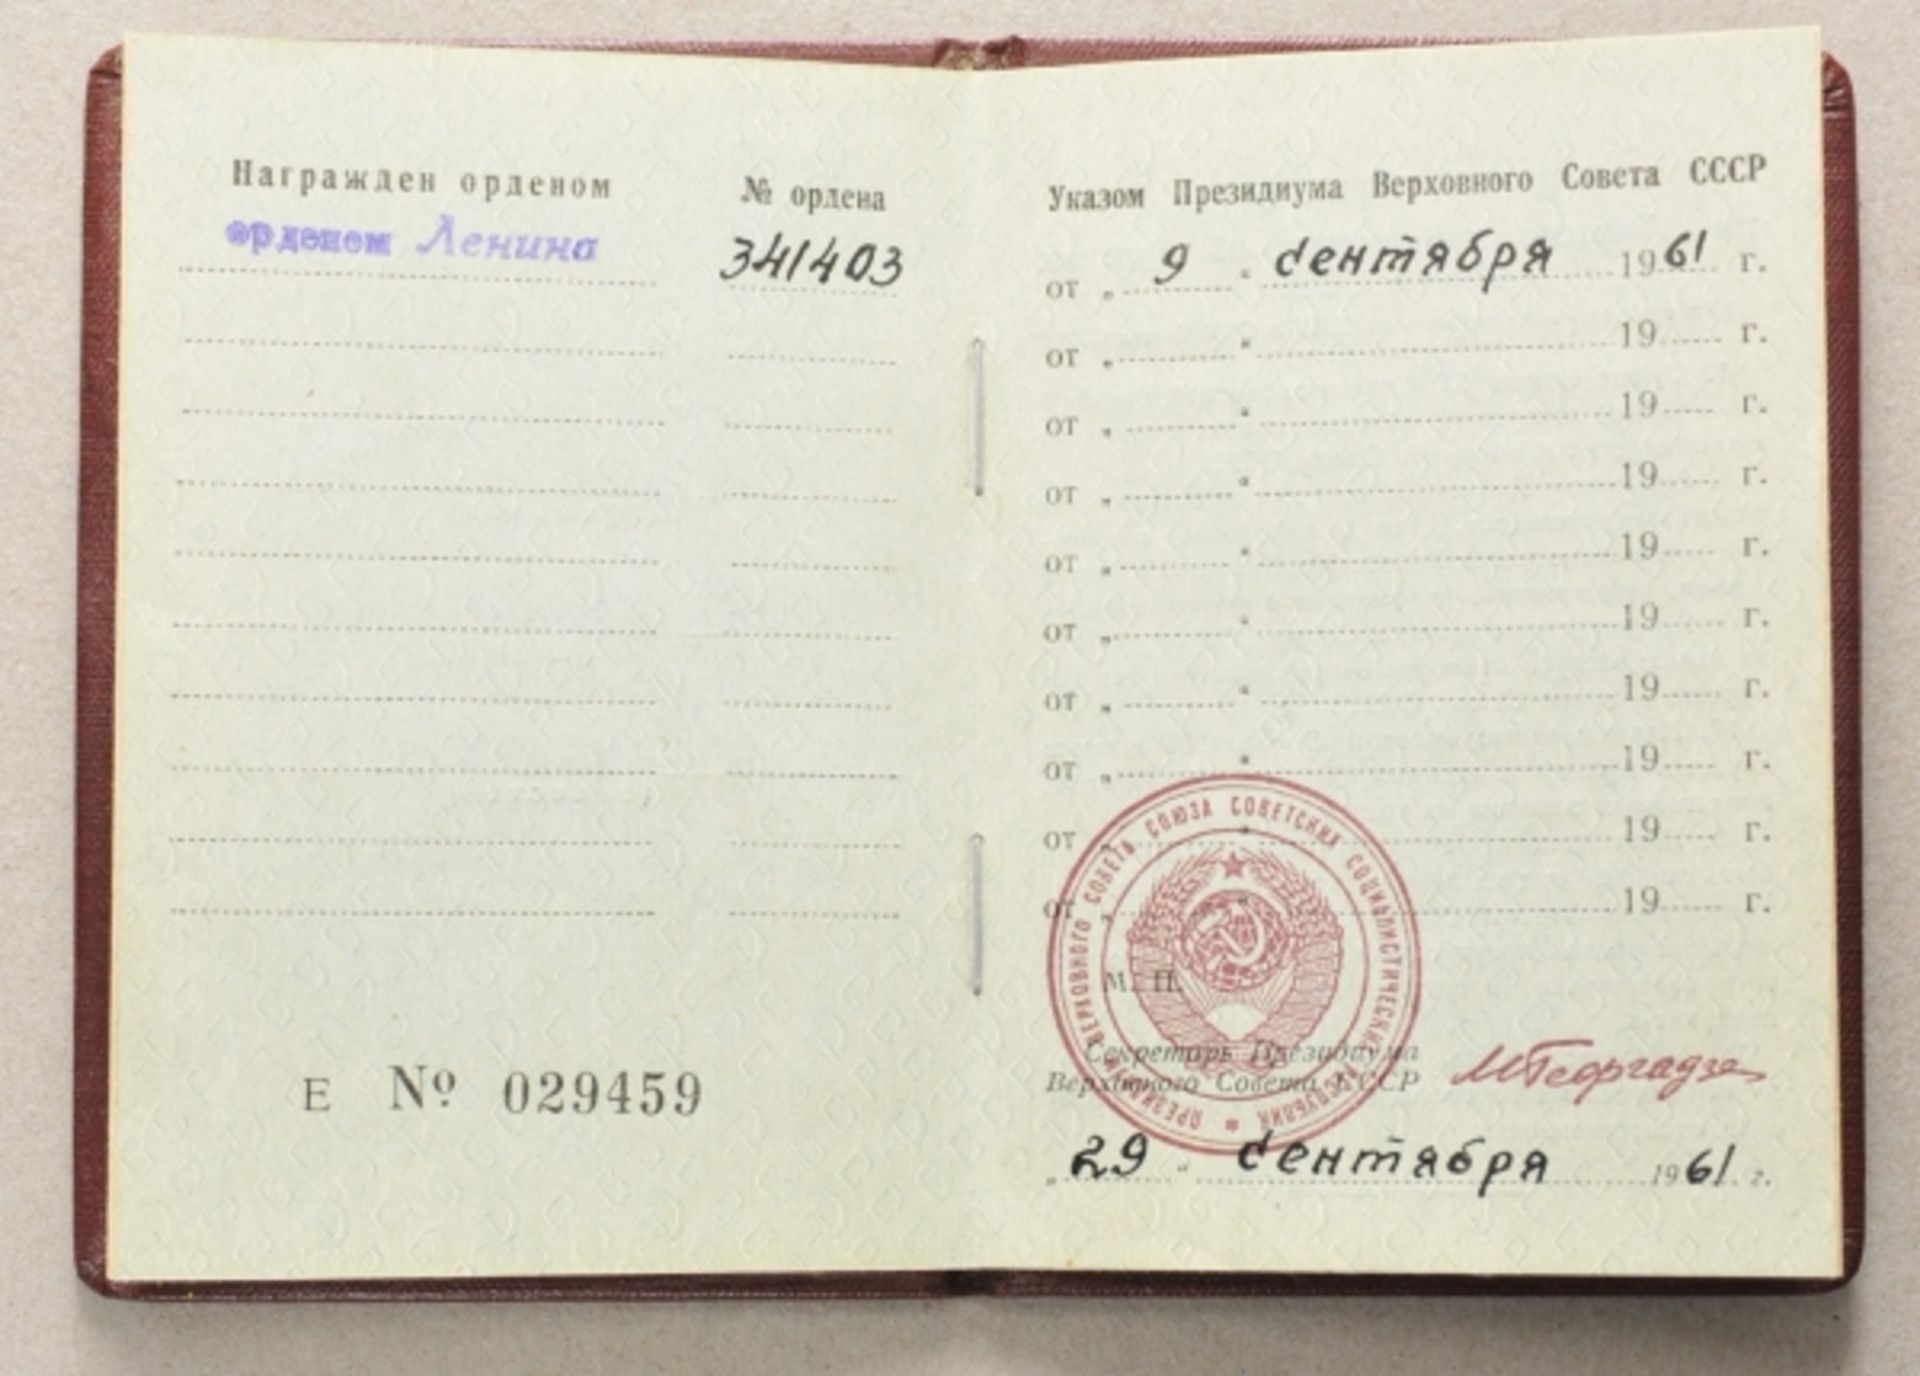 Sowjetunion: Lenin-Orden Verleihungsbuch.Ohne Foto, Nr. 341403, ausgestellt 1961.Zustand: